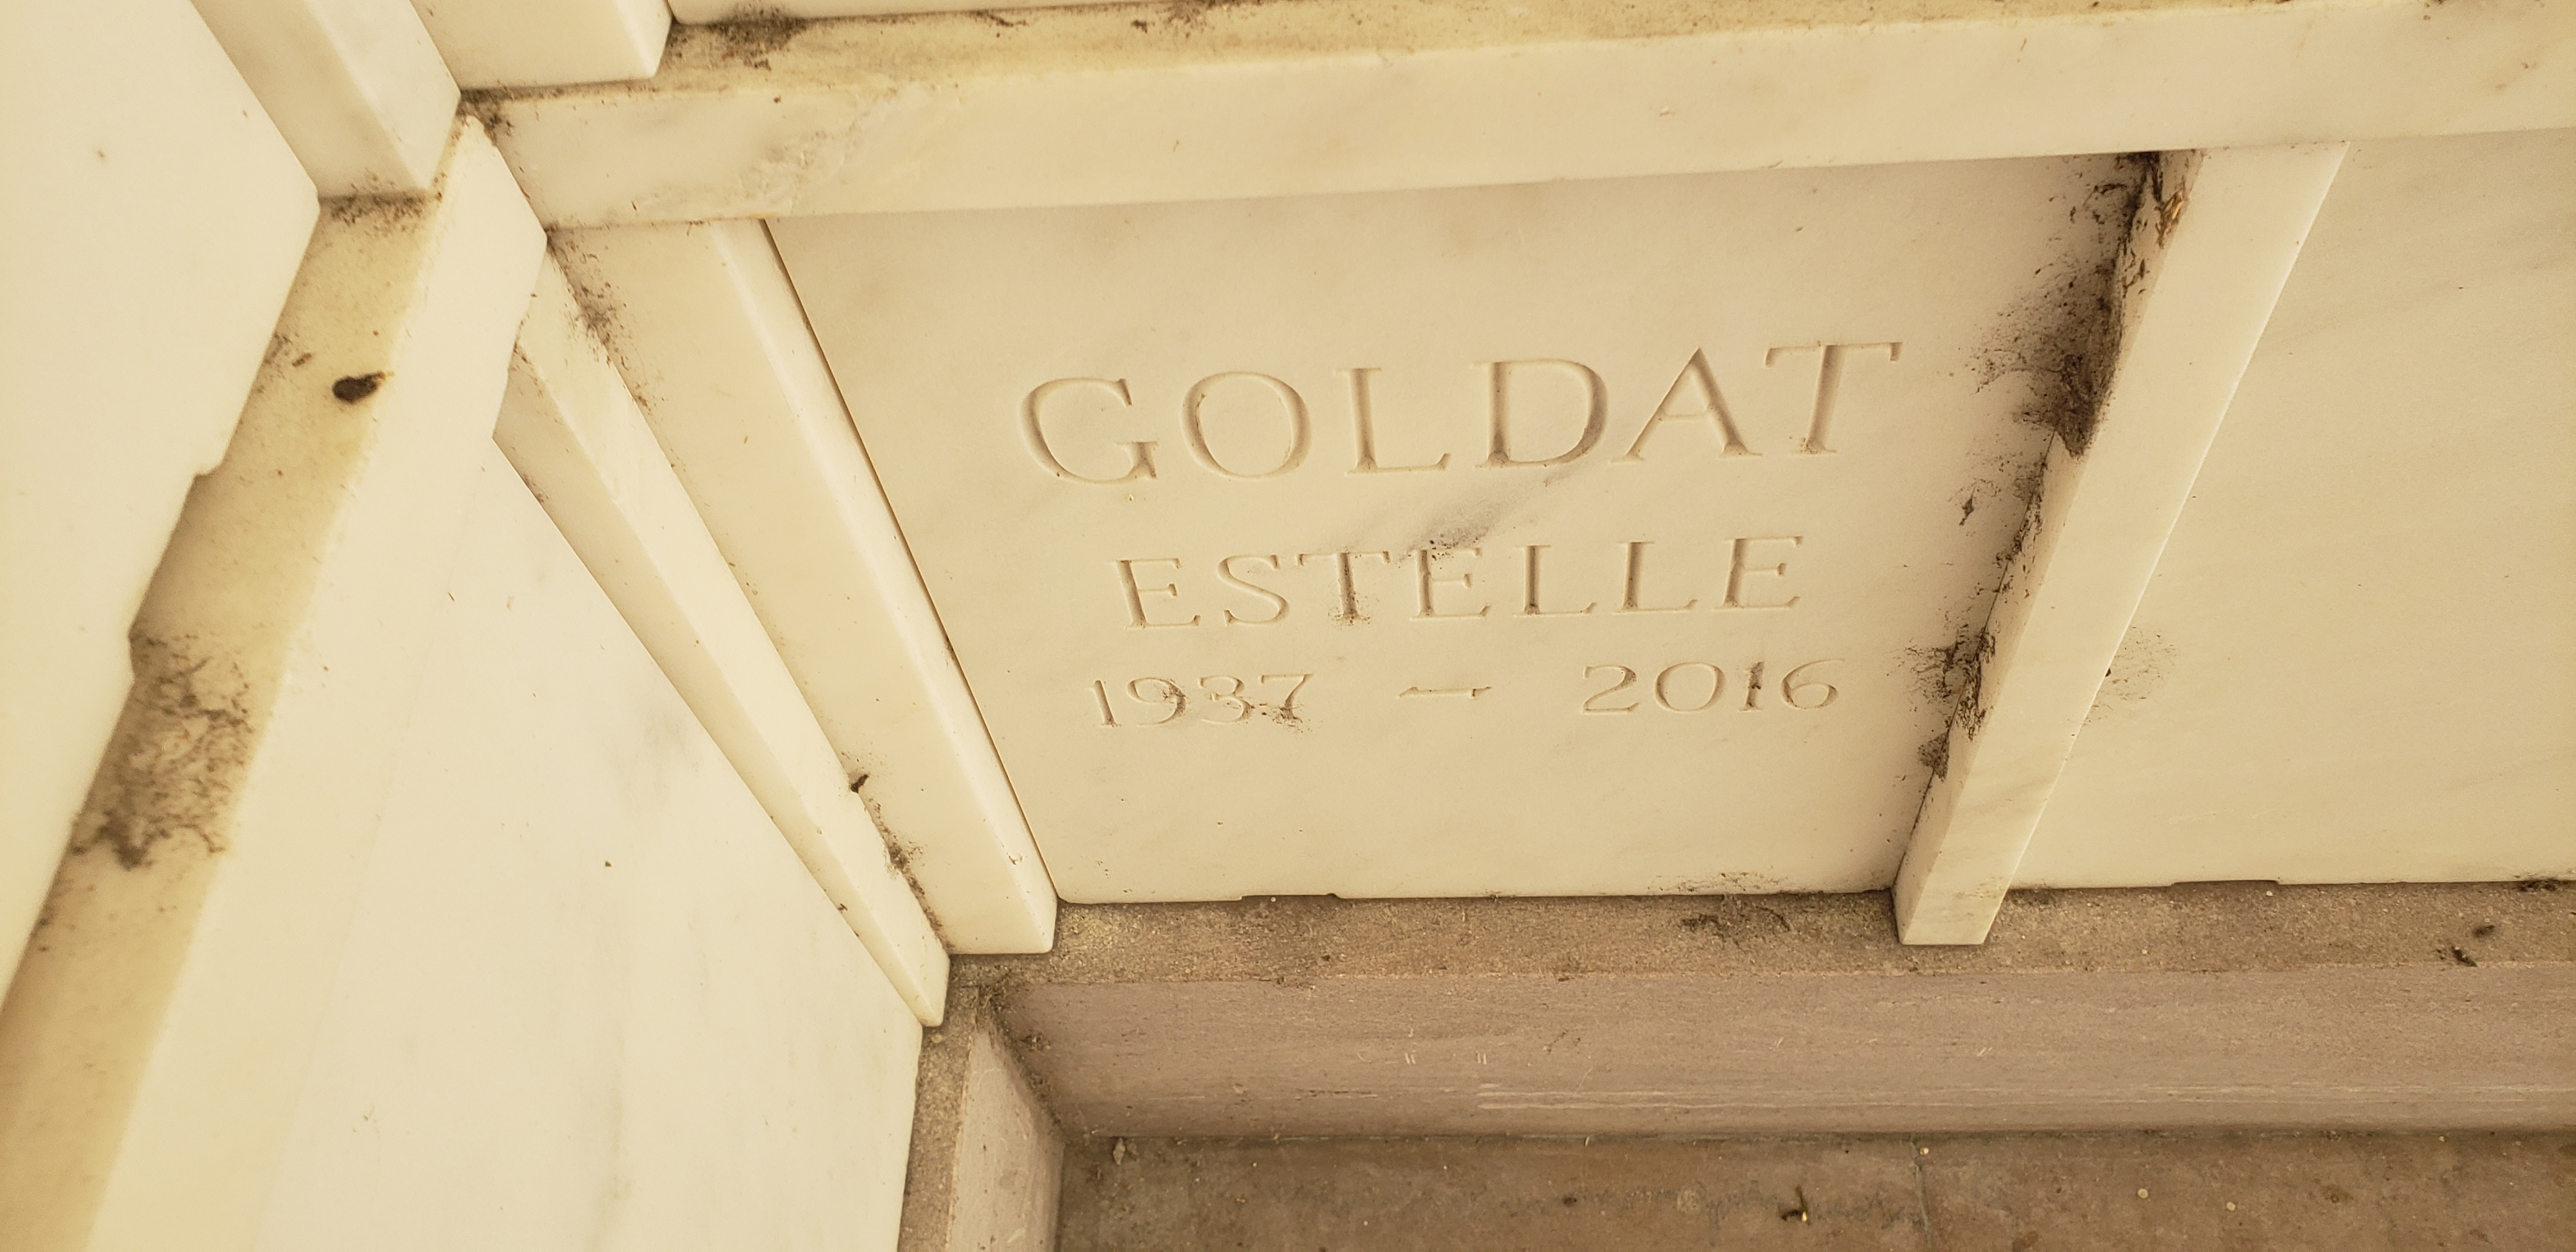 Estelle Goldat